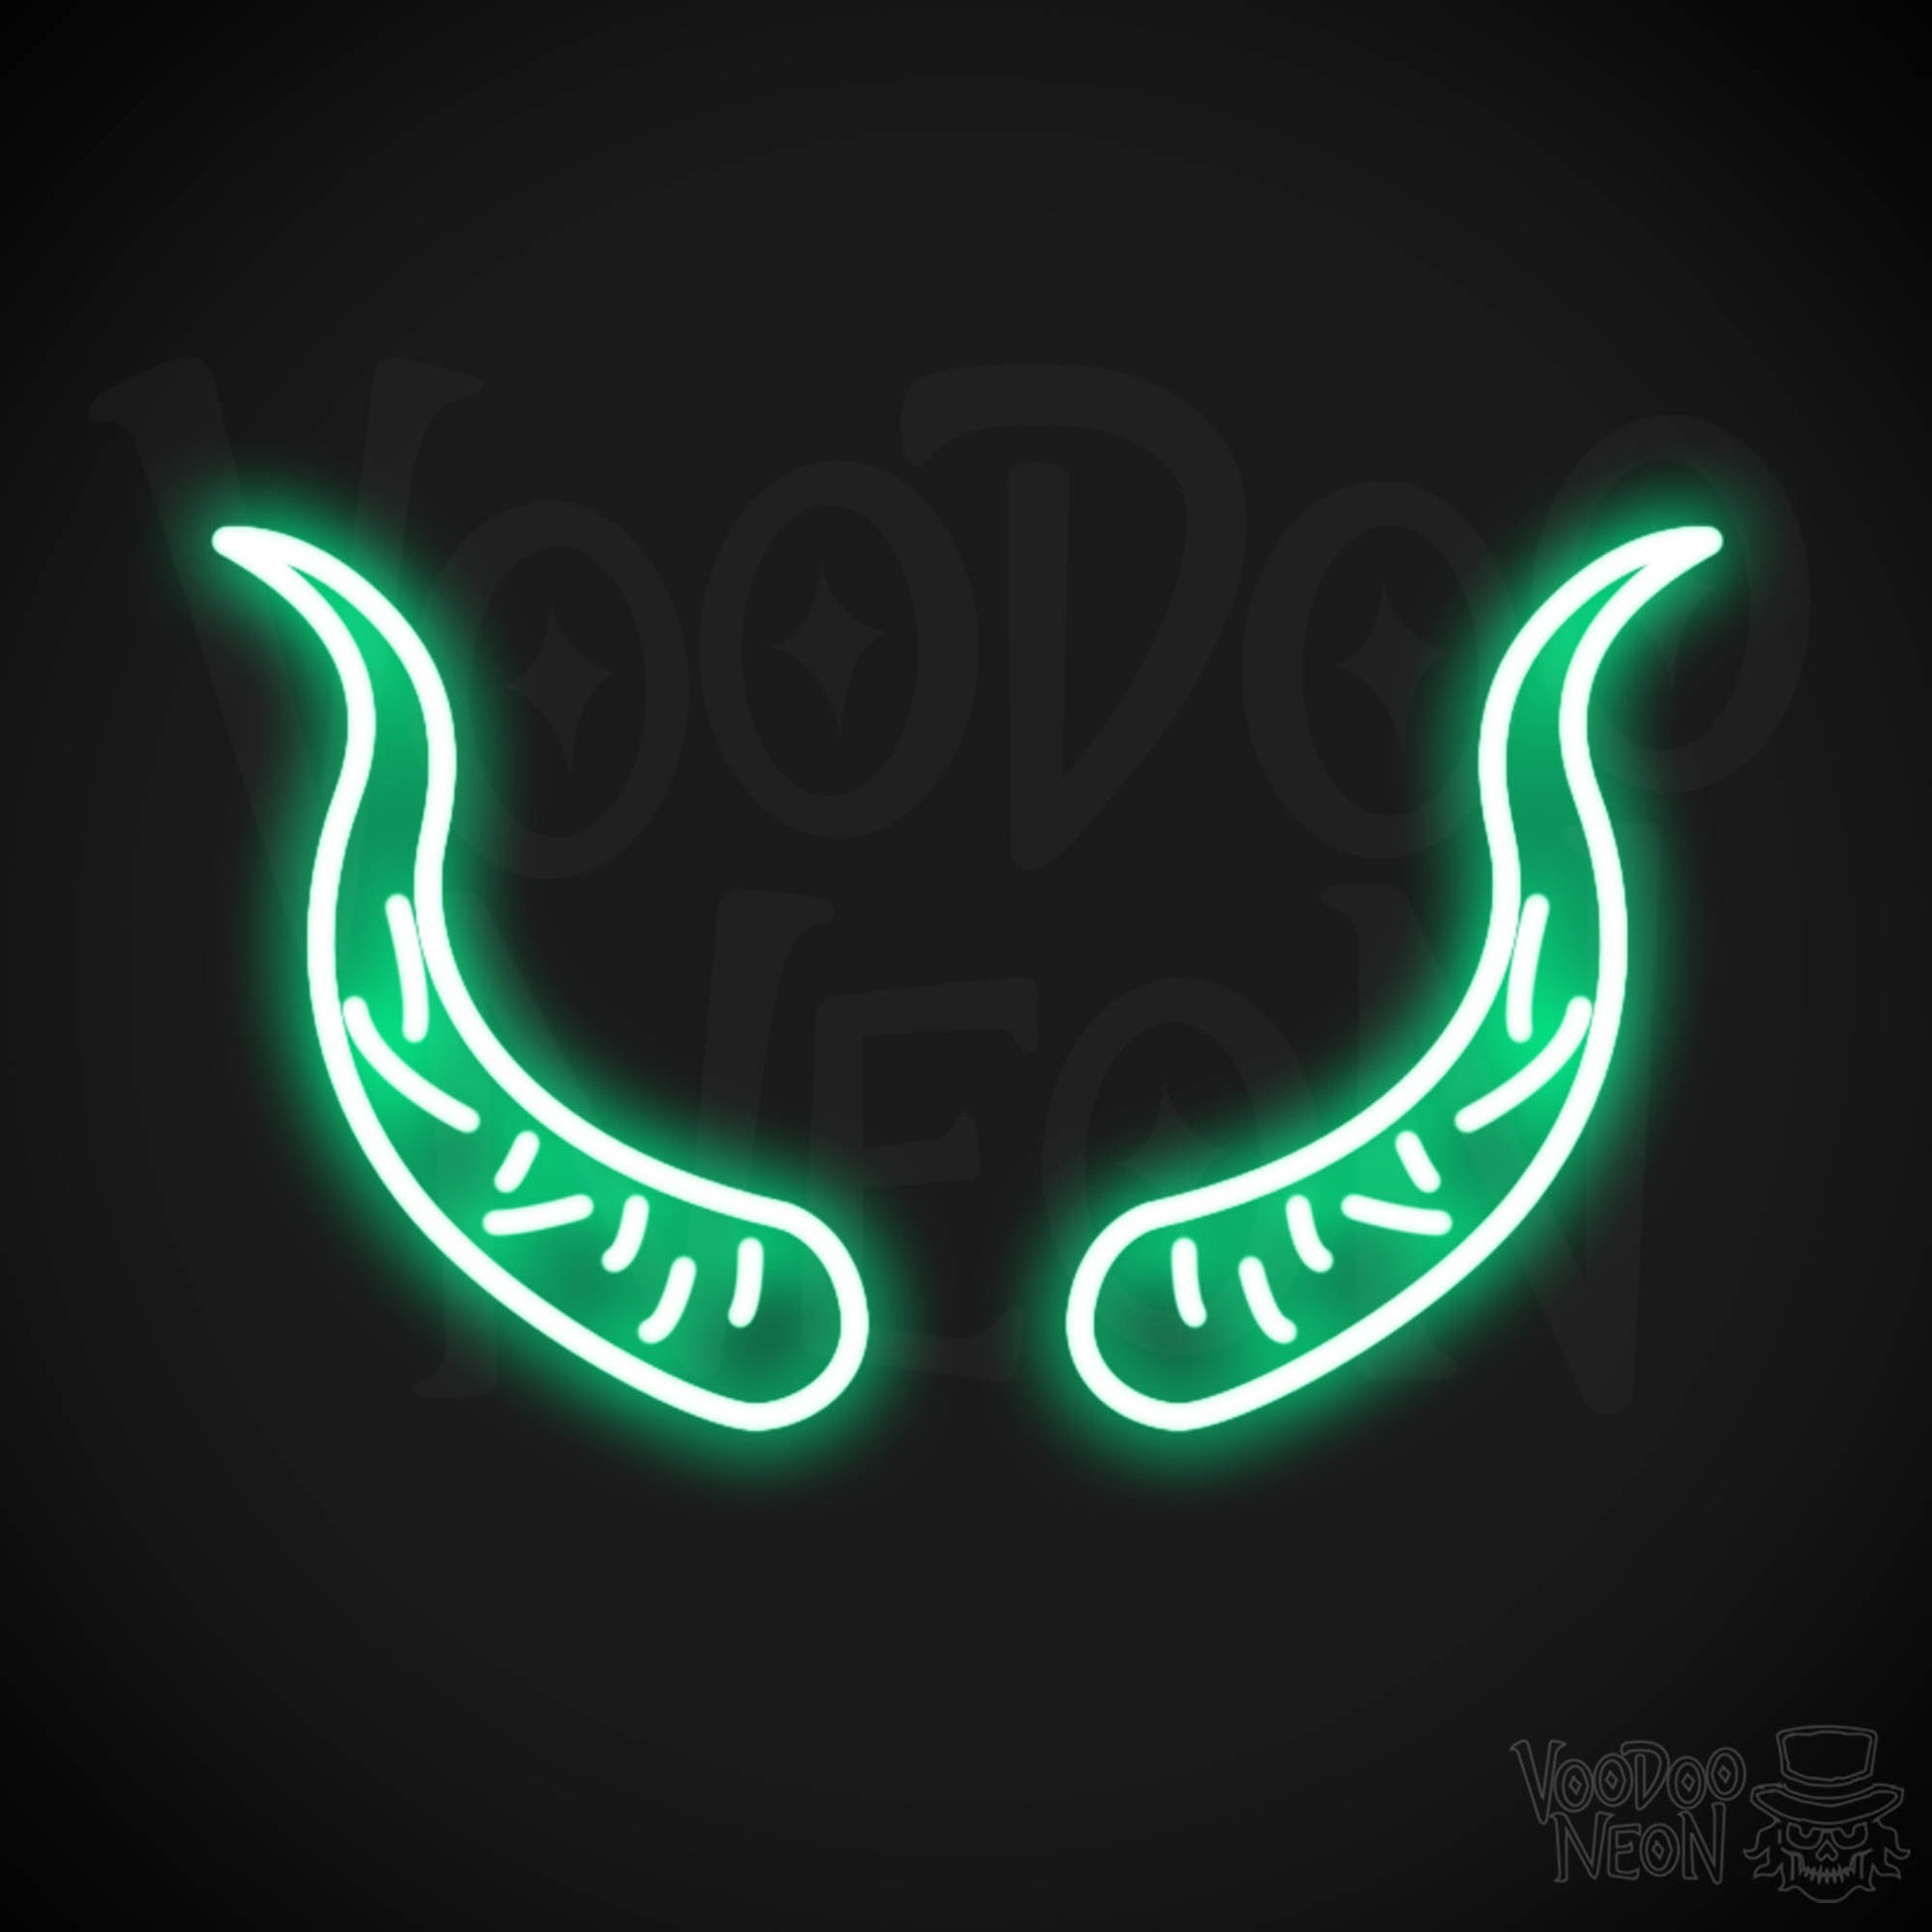 Devil Horns Neon Sign - Neon Devil Horns - LED Neon Wall Art - Color Green